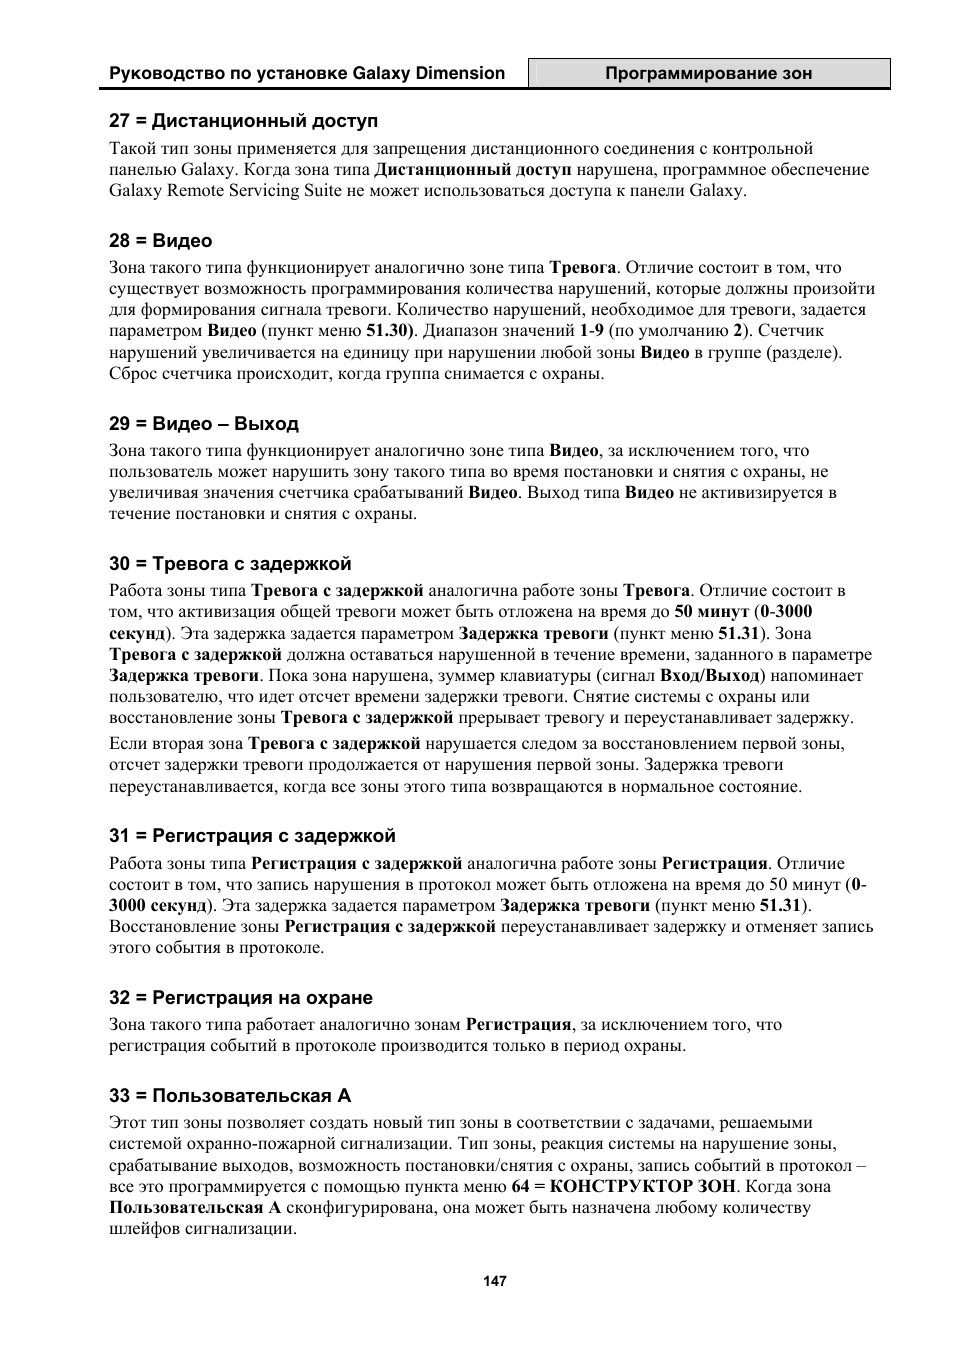 Инструкция по эксплуатации Honeywell Руководство по установке контрольных панелей серии Galaxy Dimension | Страница 147 / 260